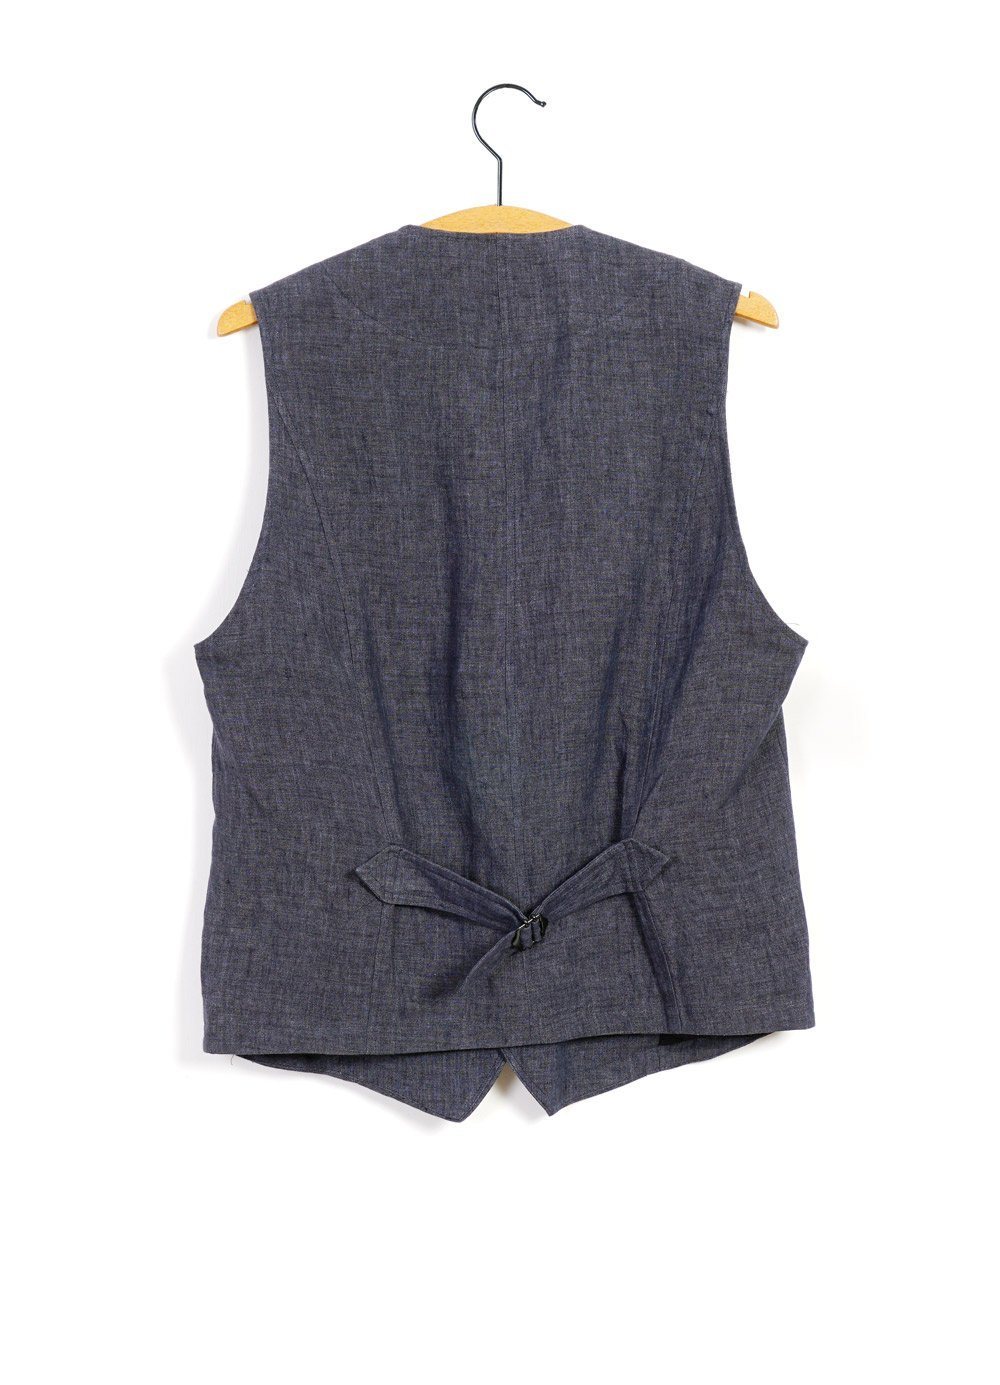 HANSEN Garments - KALLE | Casual Classic Vest | Blue Delave | €225 - HANSEN Garments